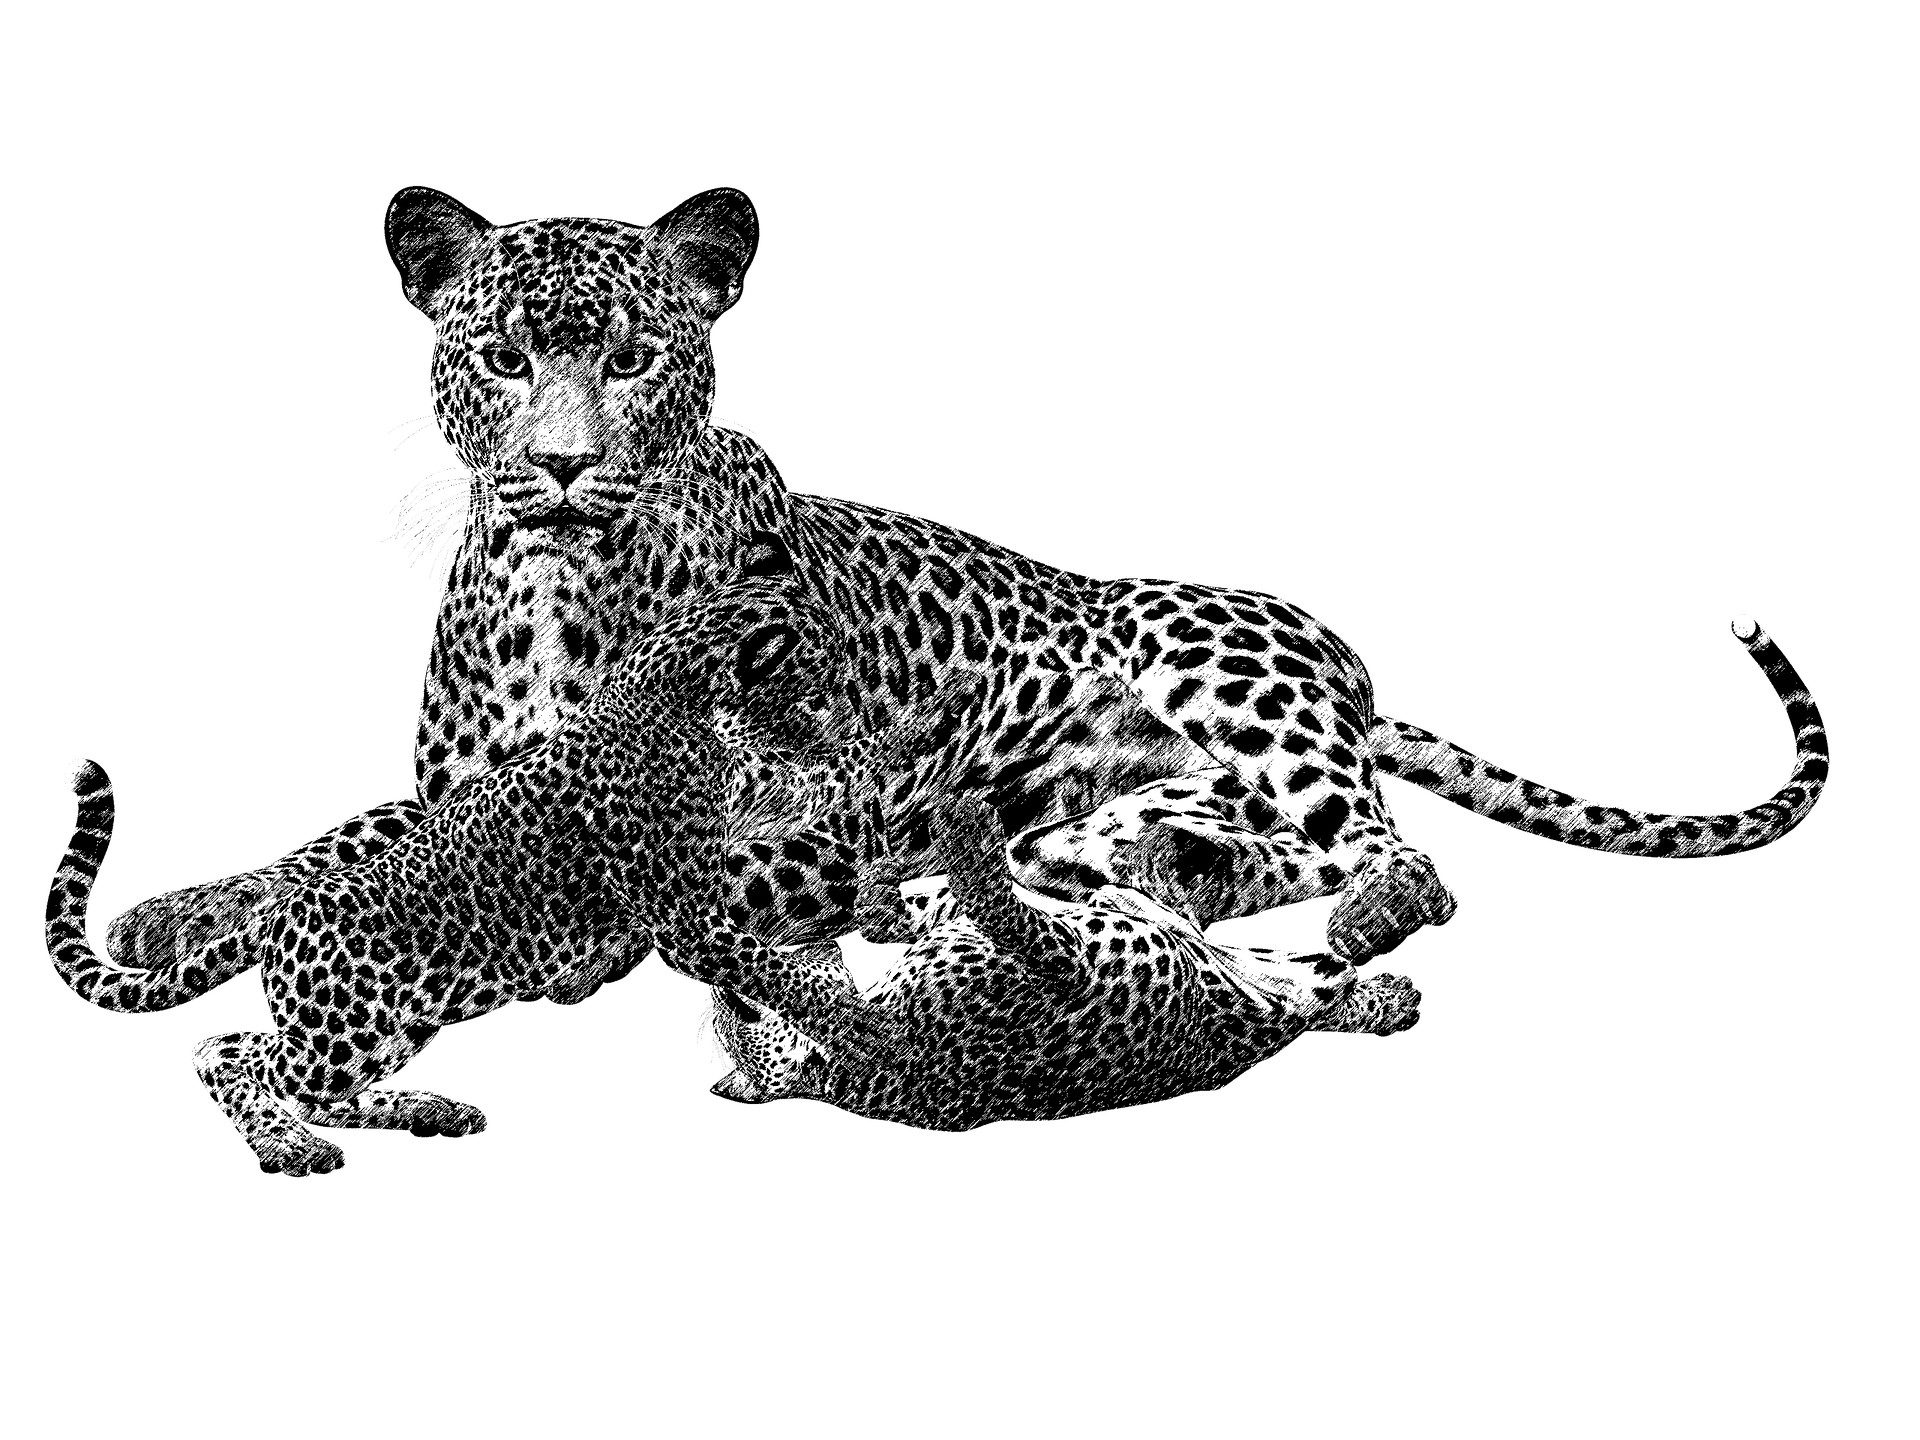 Disegno da colorare di ghepardo realistico con i cuccioli